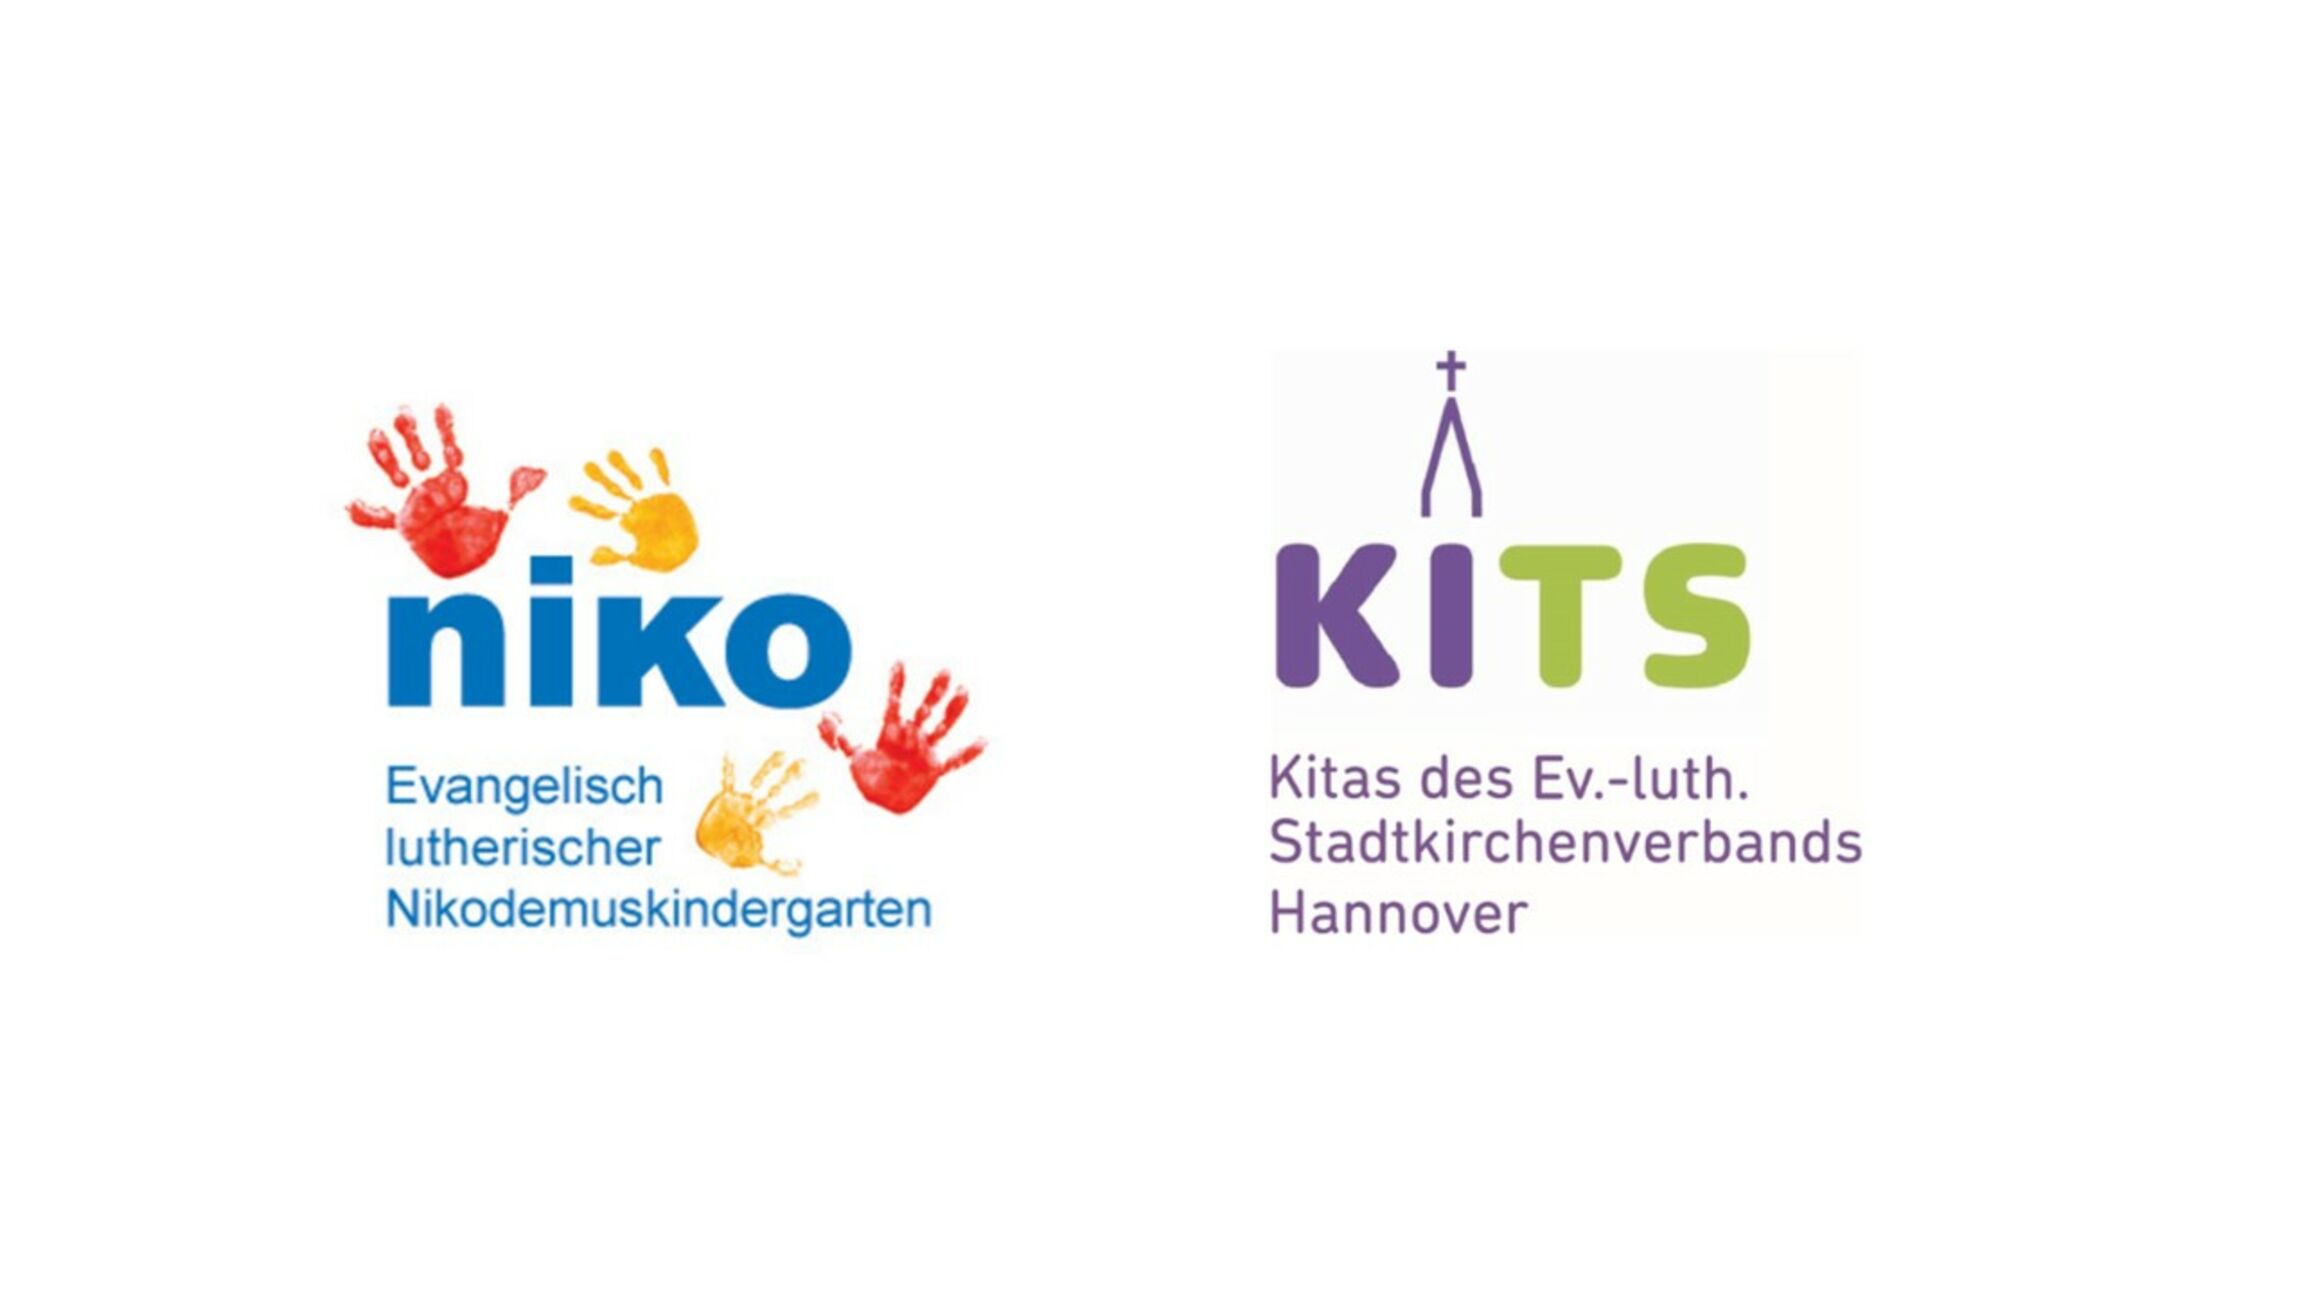 KITS und Niko Kita Logo zus.